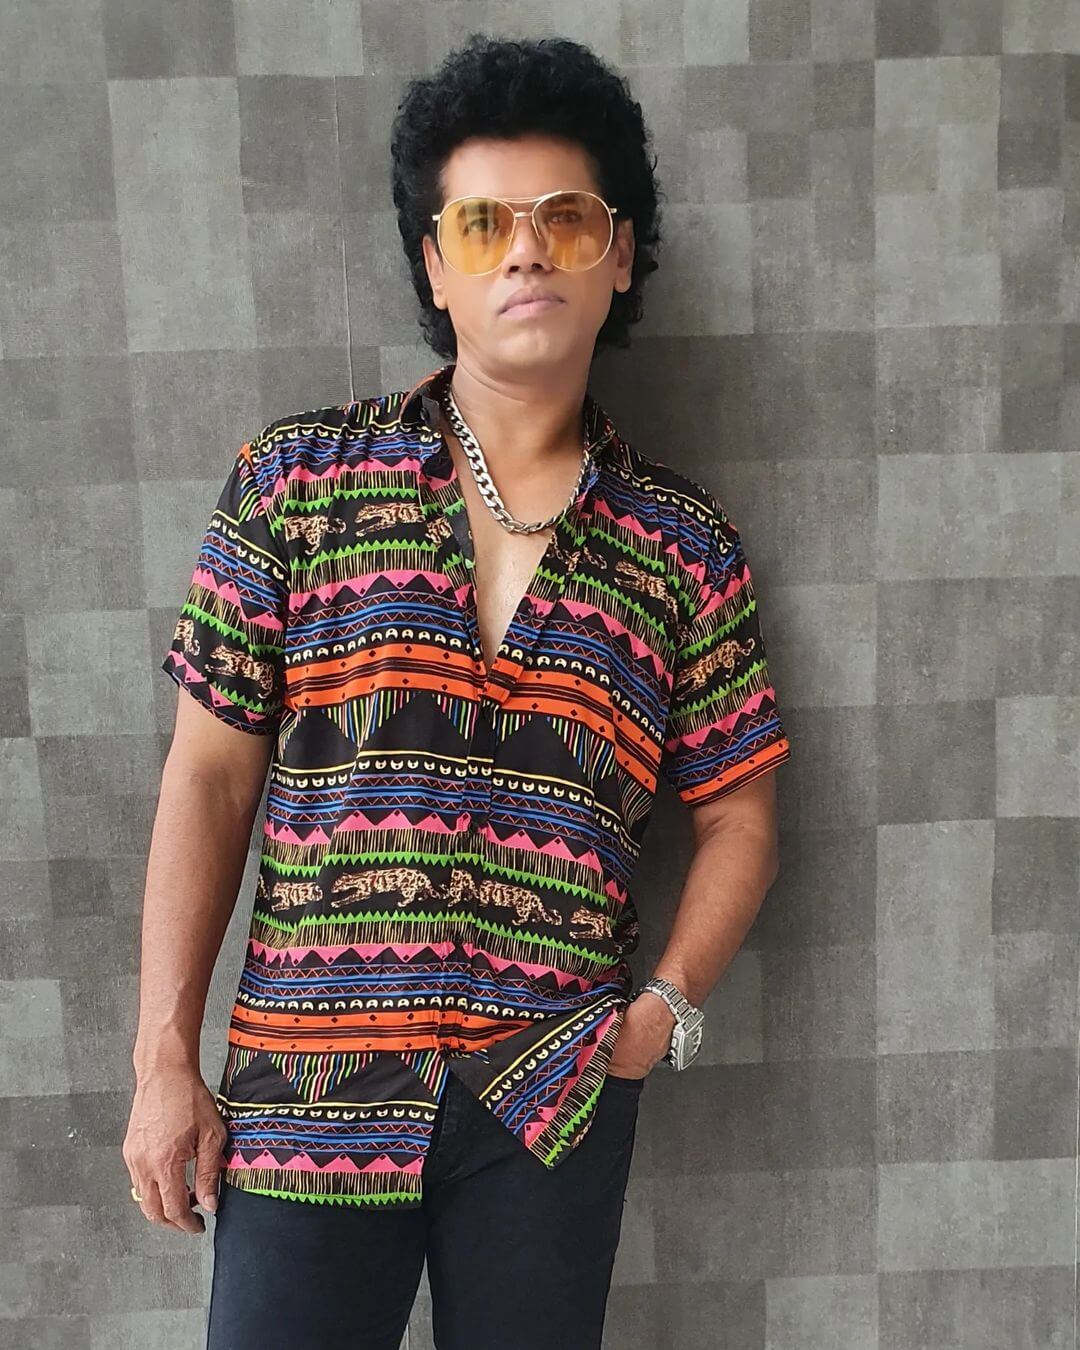 Actor Siddharth Jadhav in stylish shirt